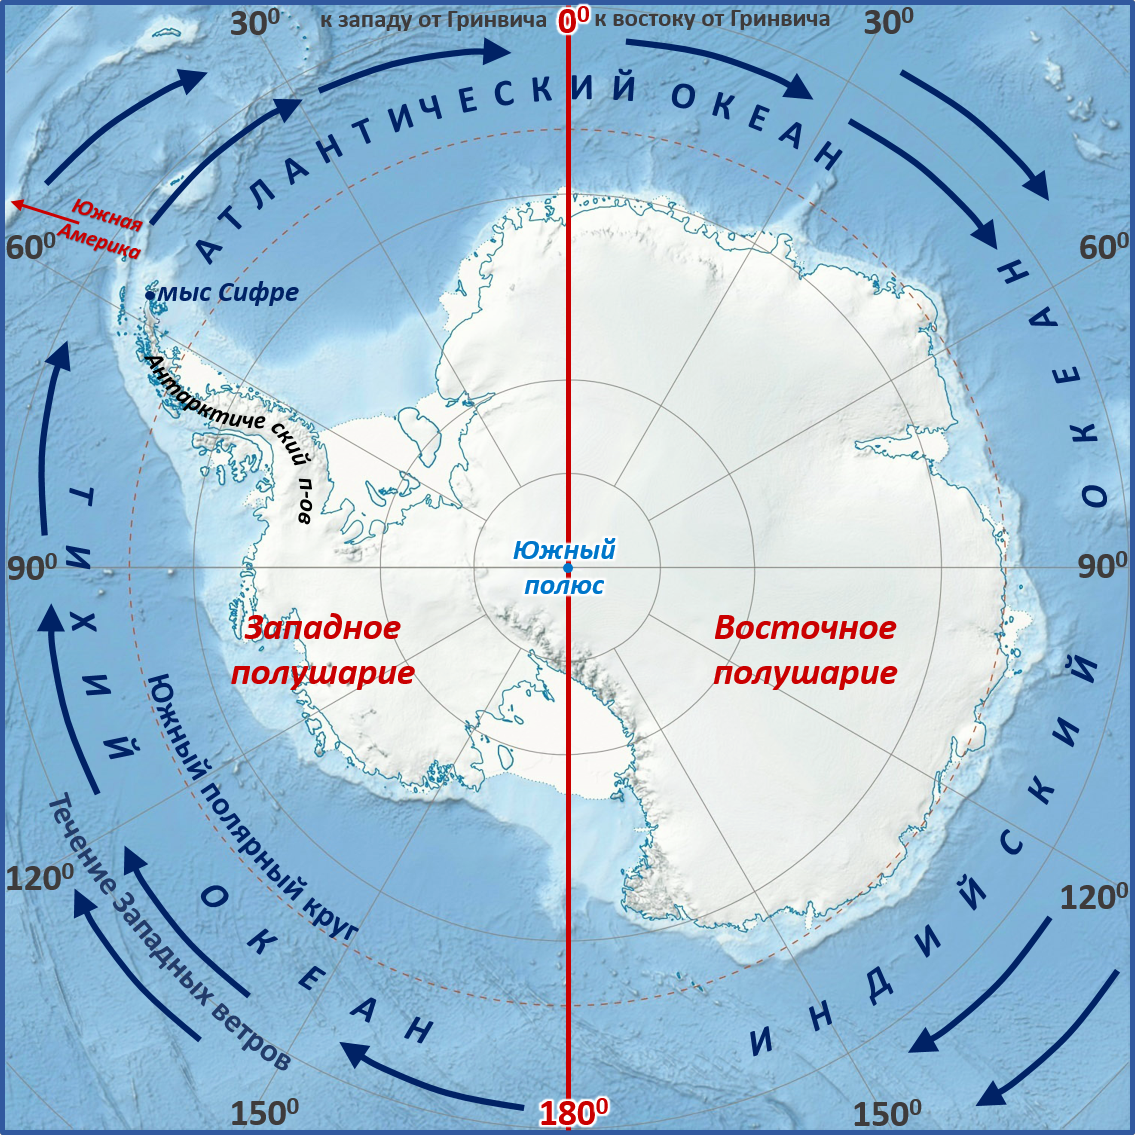 Высшая точка западного полушария. Мыс Сифре на карте Антарктиды. Моря: Амундсена, Беллинсгаузена, Росса, Уэдделла.. Мыс Сифре Антарктида. Южный полюс на карте Антарктиды.